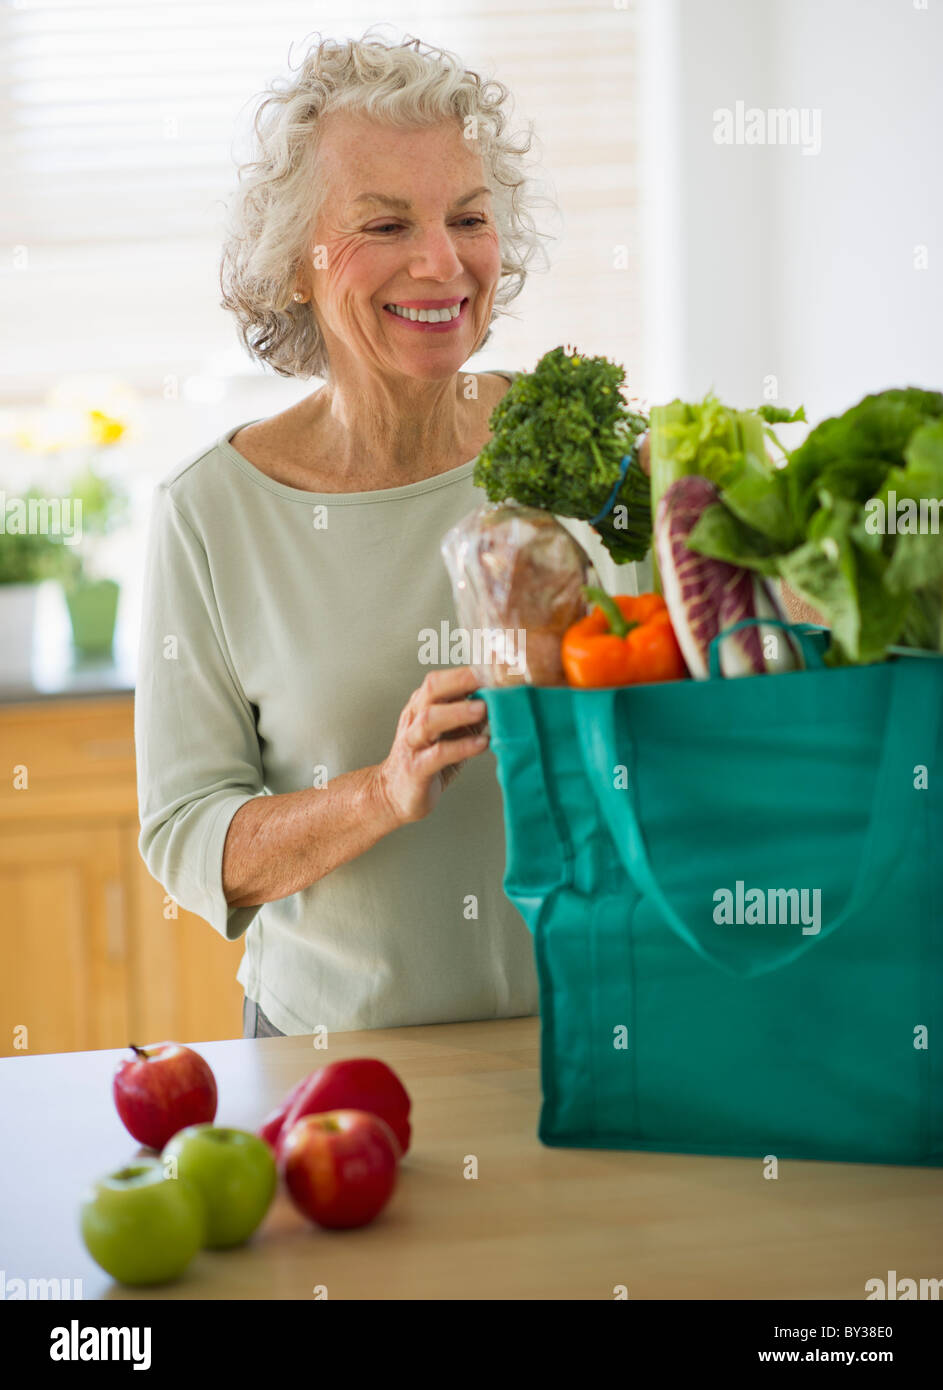 Stati Uniti d'America, New Jersey, Jersey City, Senior donna con sacchetto shopper in cucina Foto Stock